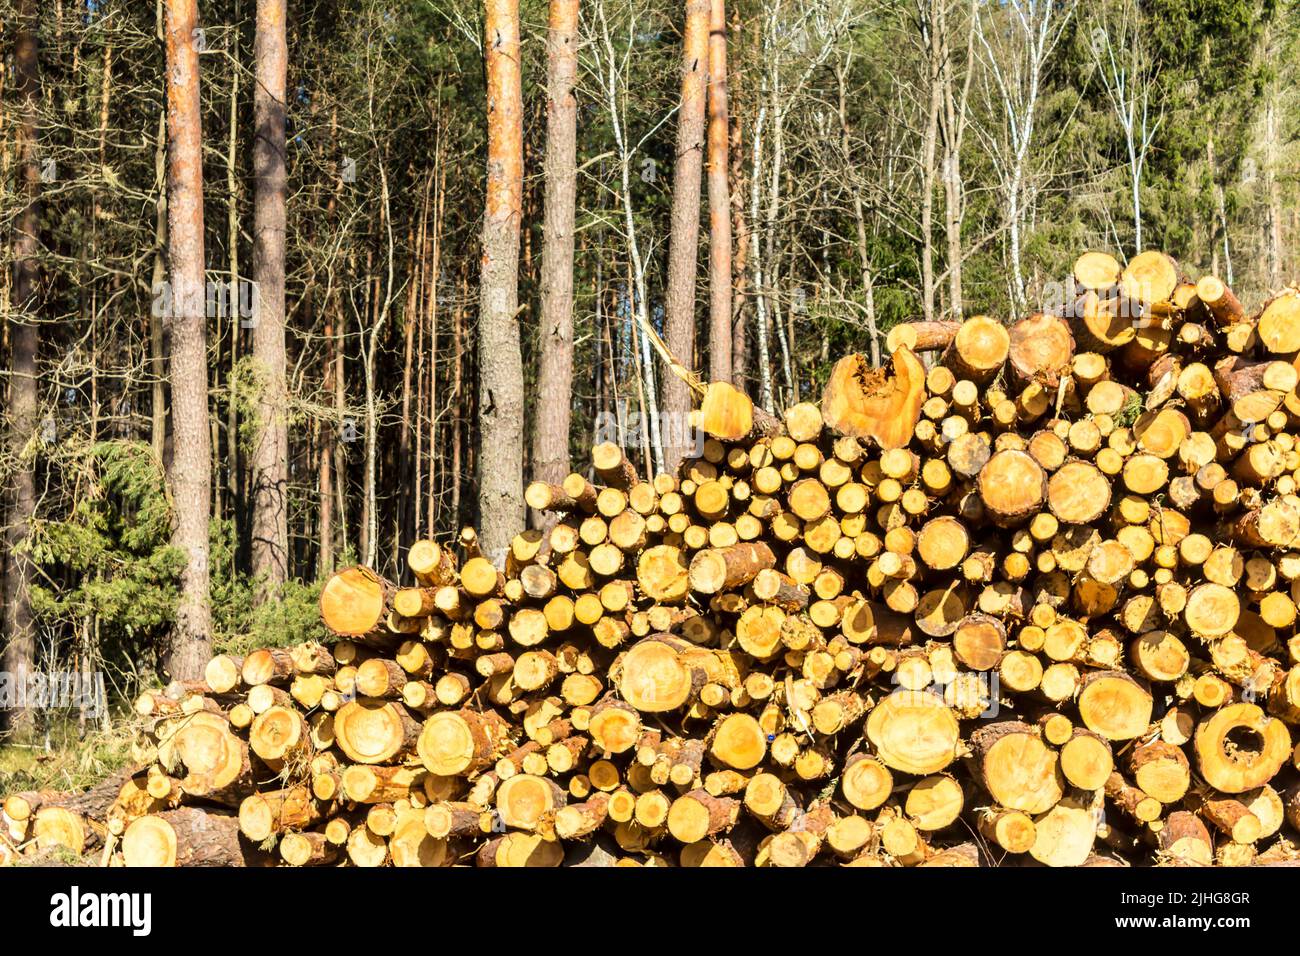 Extrémités jaunes rondes de pins sciés sur le fond de la forêt. Site sur l'industrie du bois , bûcheron , abattage , écologie , forêt , arbre . Banque D'Images